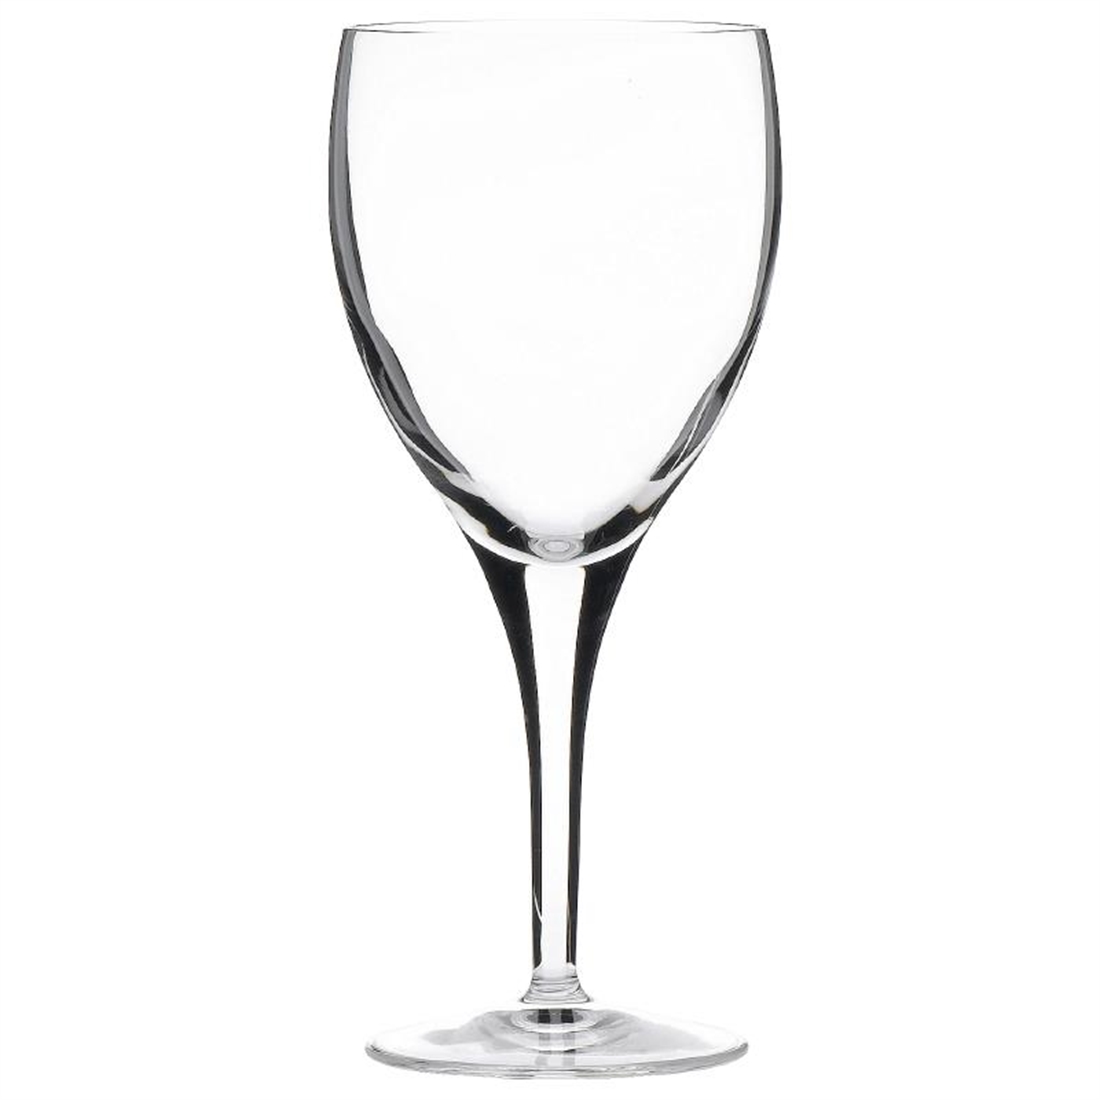 Luigi Bormioli Michelangelo Wine Crystal Glasses 340ml